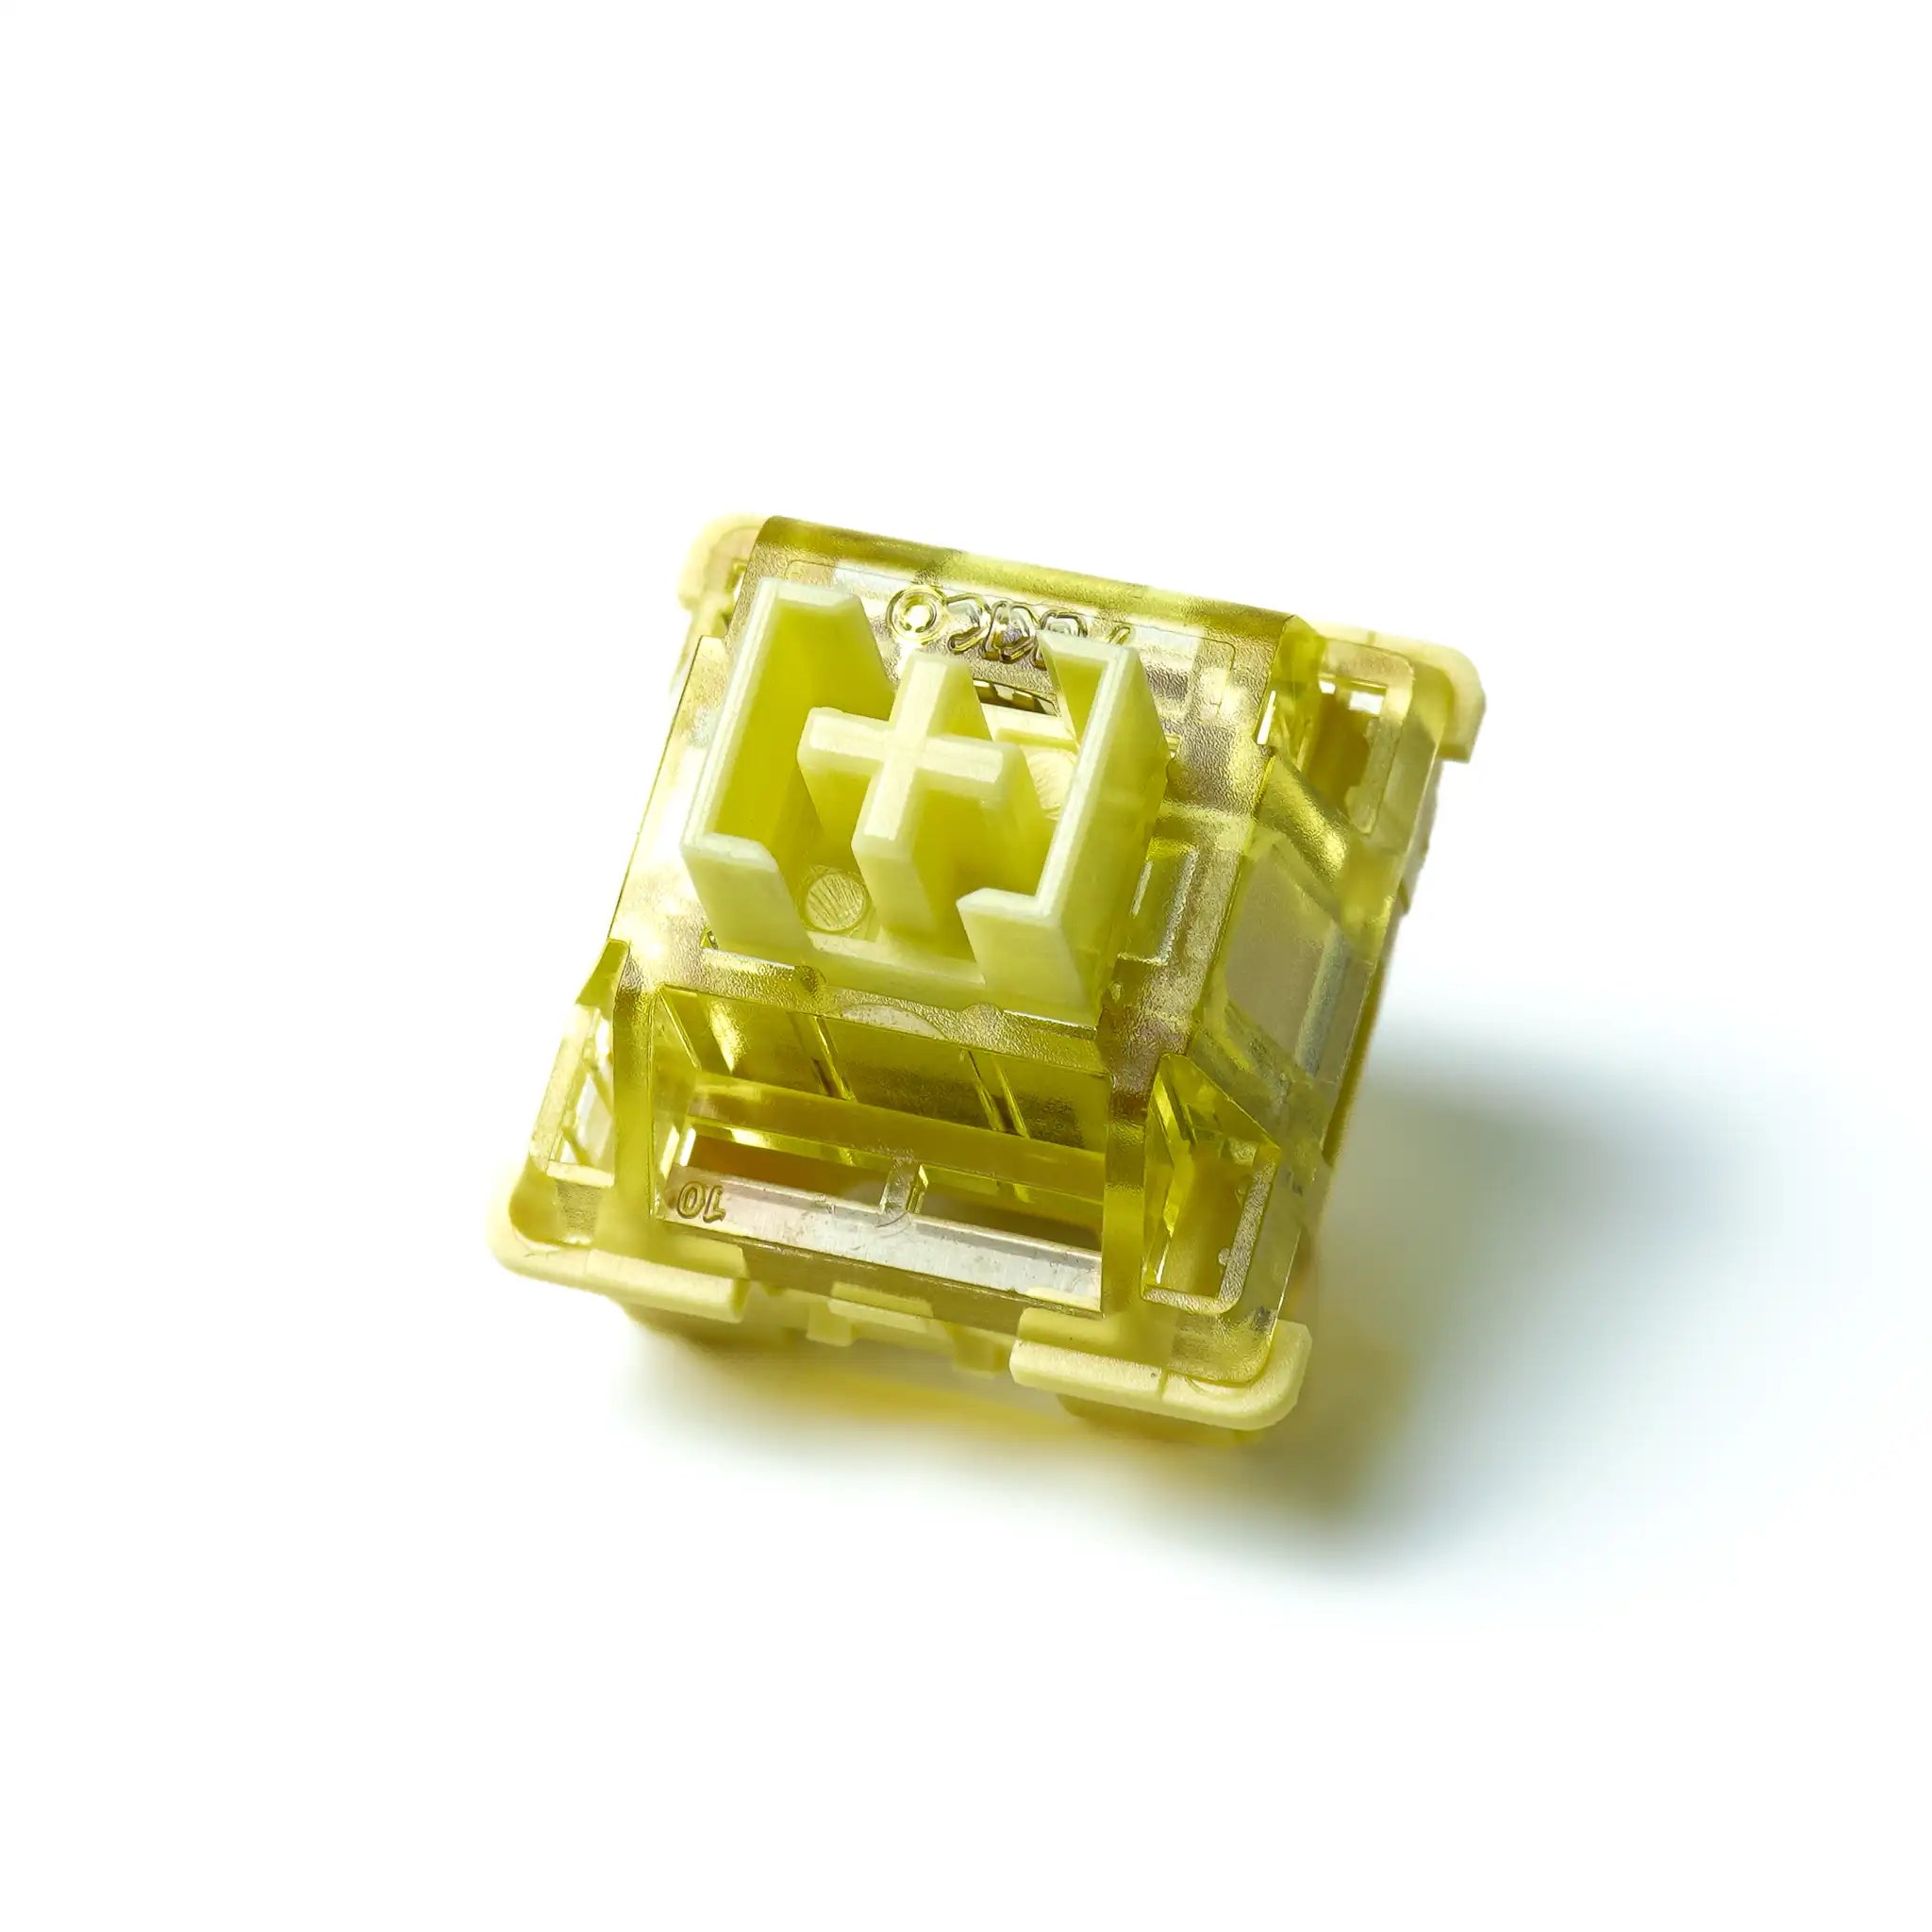 Akko V3 Cream Yellow Pro Mechanical Keyboard Linear Switches - IKASAYA